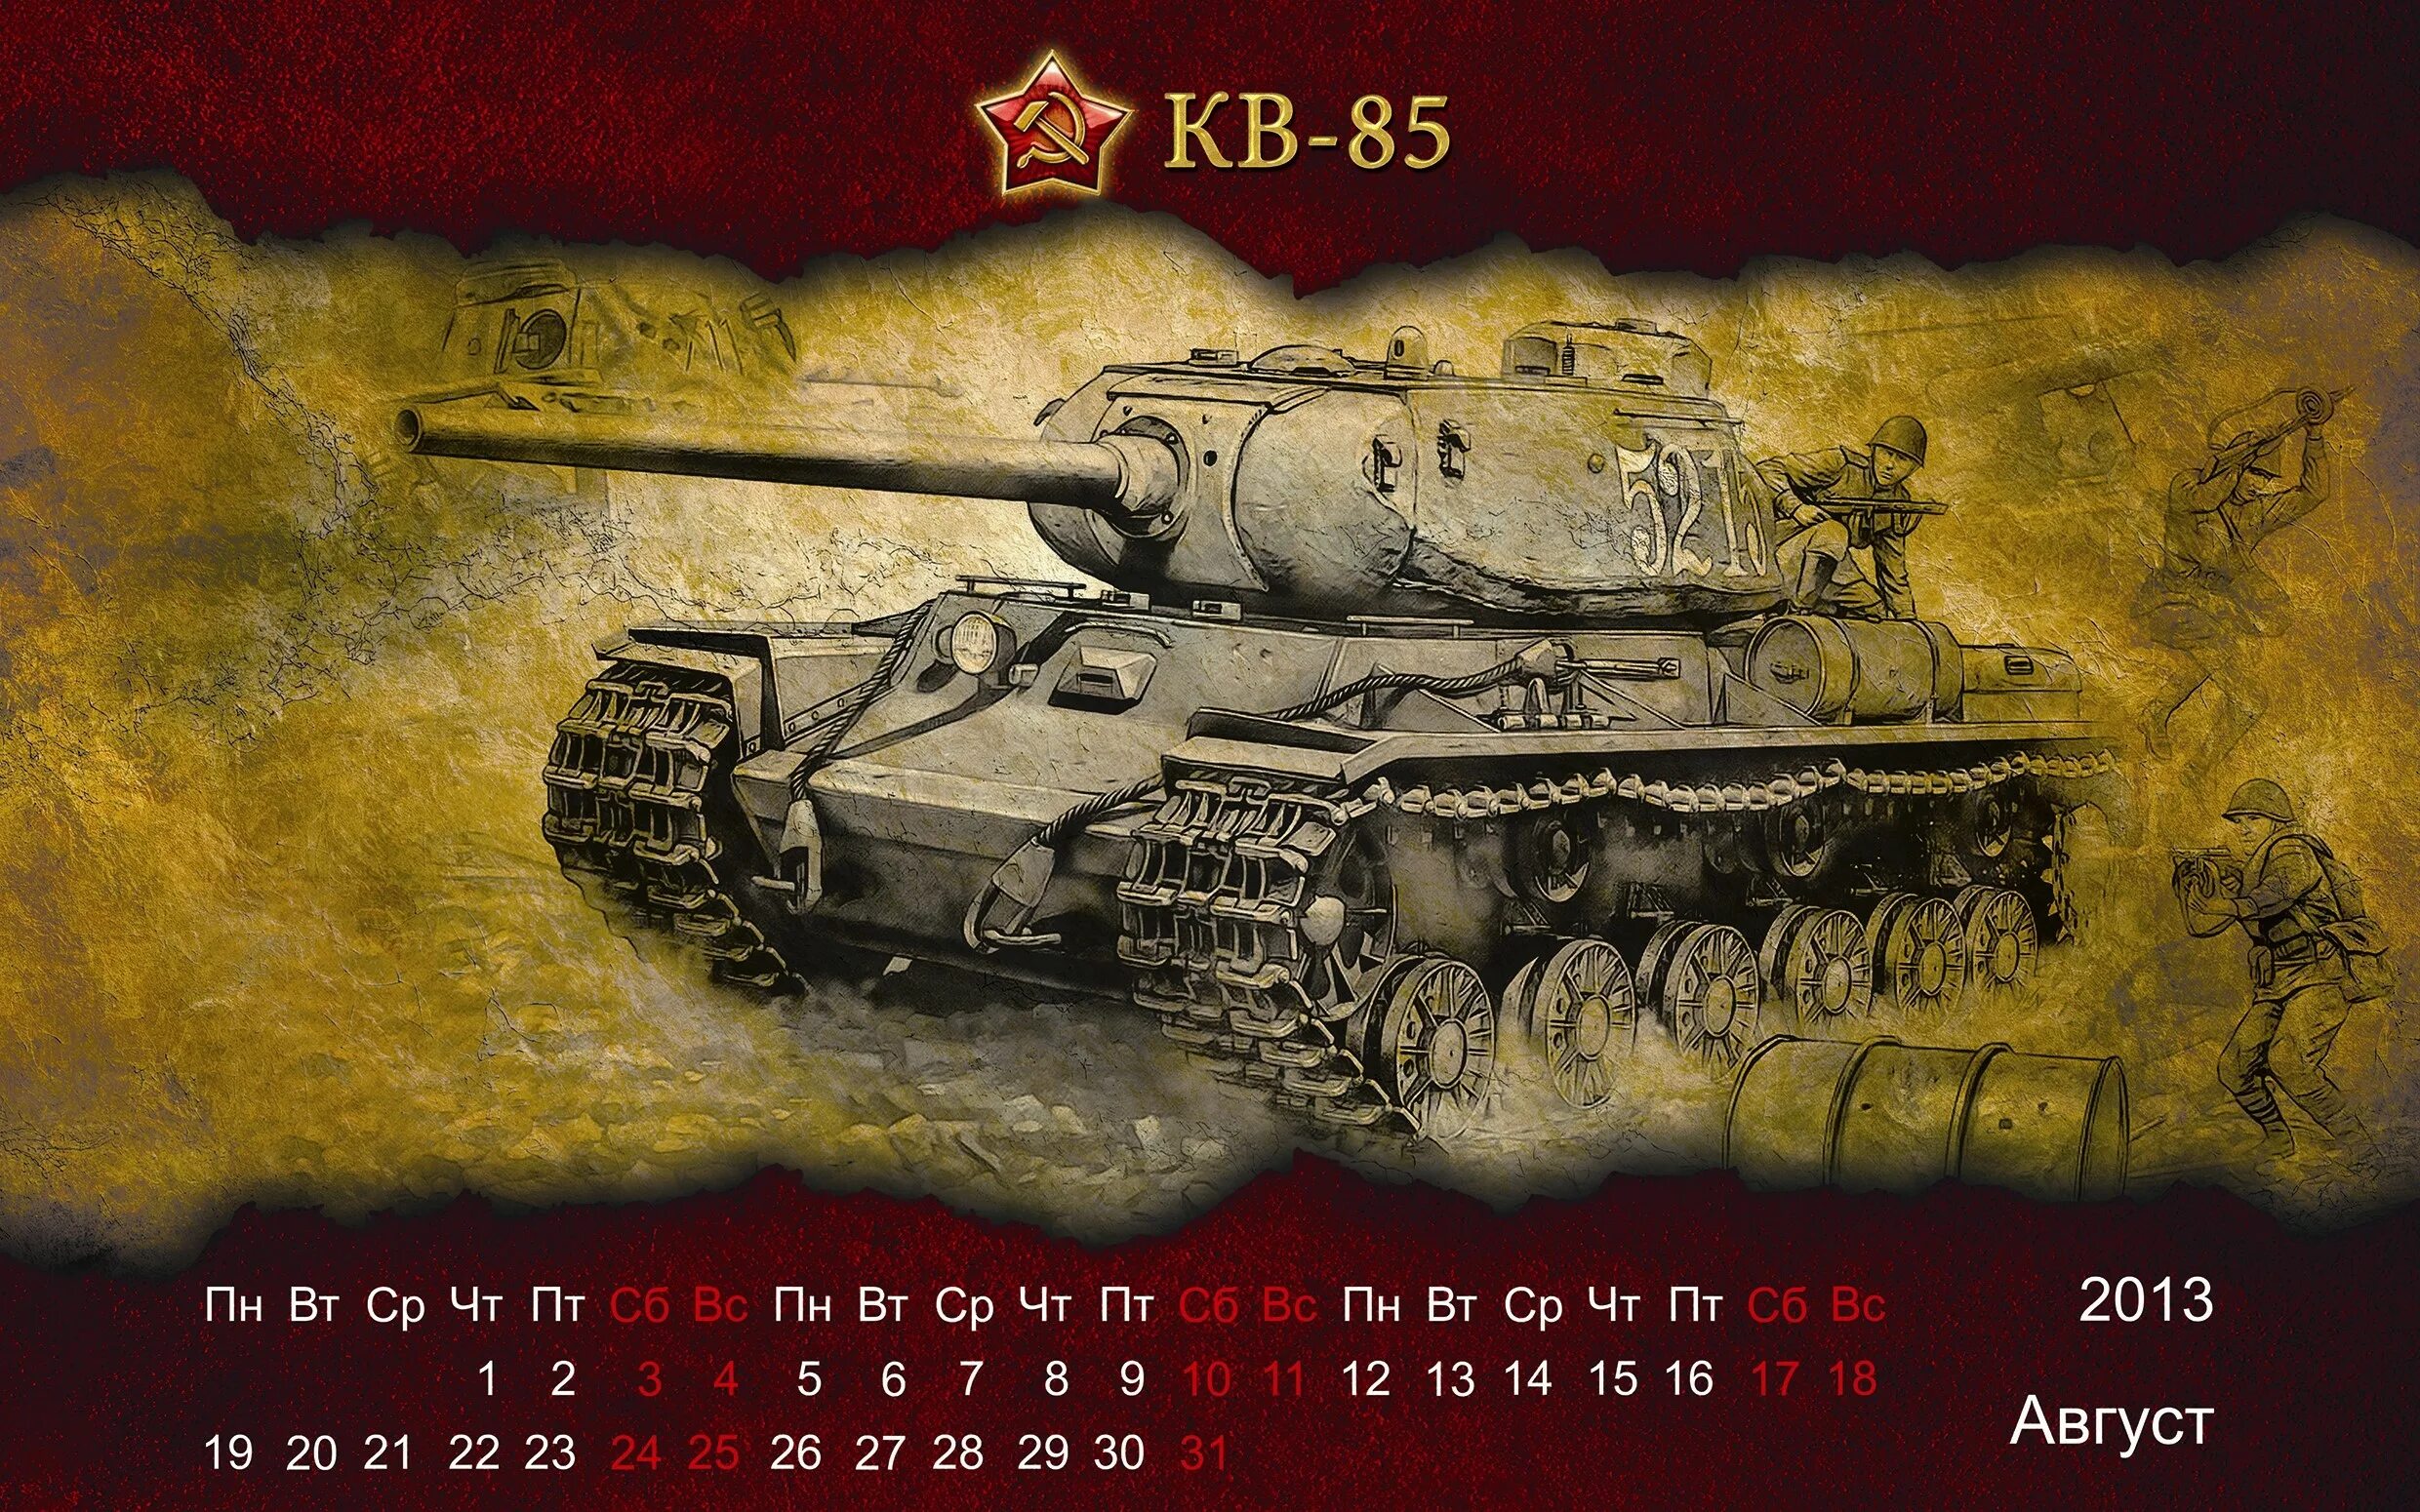 Календарь ворлд оф. Календарь с танками. Календарь с изображением танка. Календарь World of Tanks. Кв-85 танк.